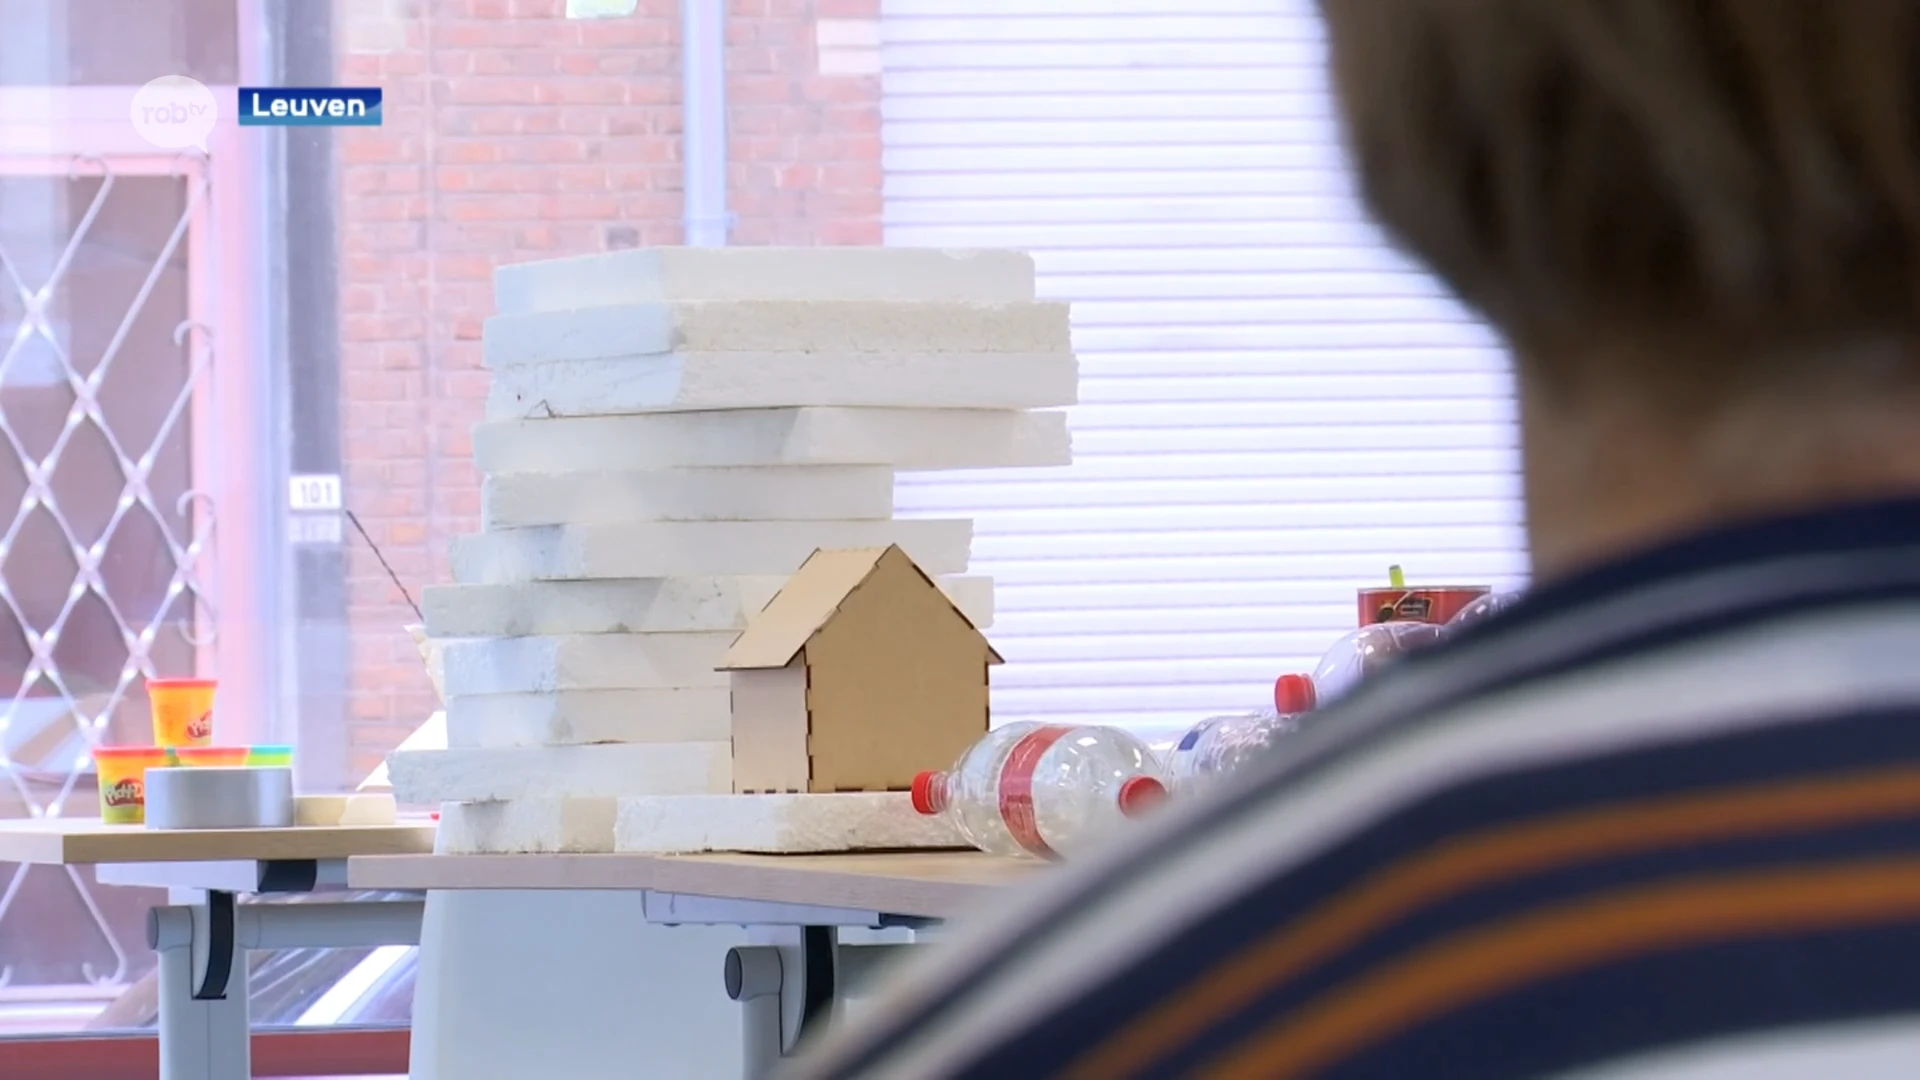 Paaskampjes voor iedereen: vier kinderen met gedrags- en emotionele problemen leren drijvende huizen bouwen